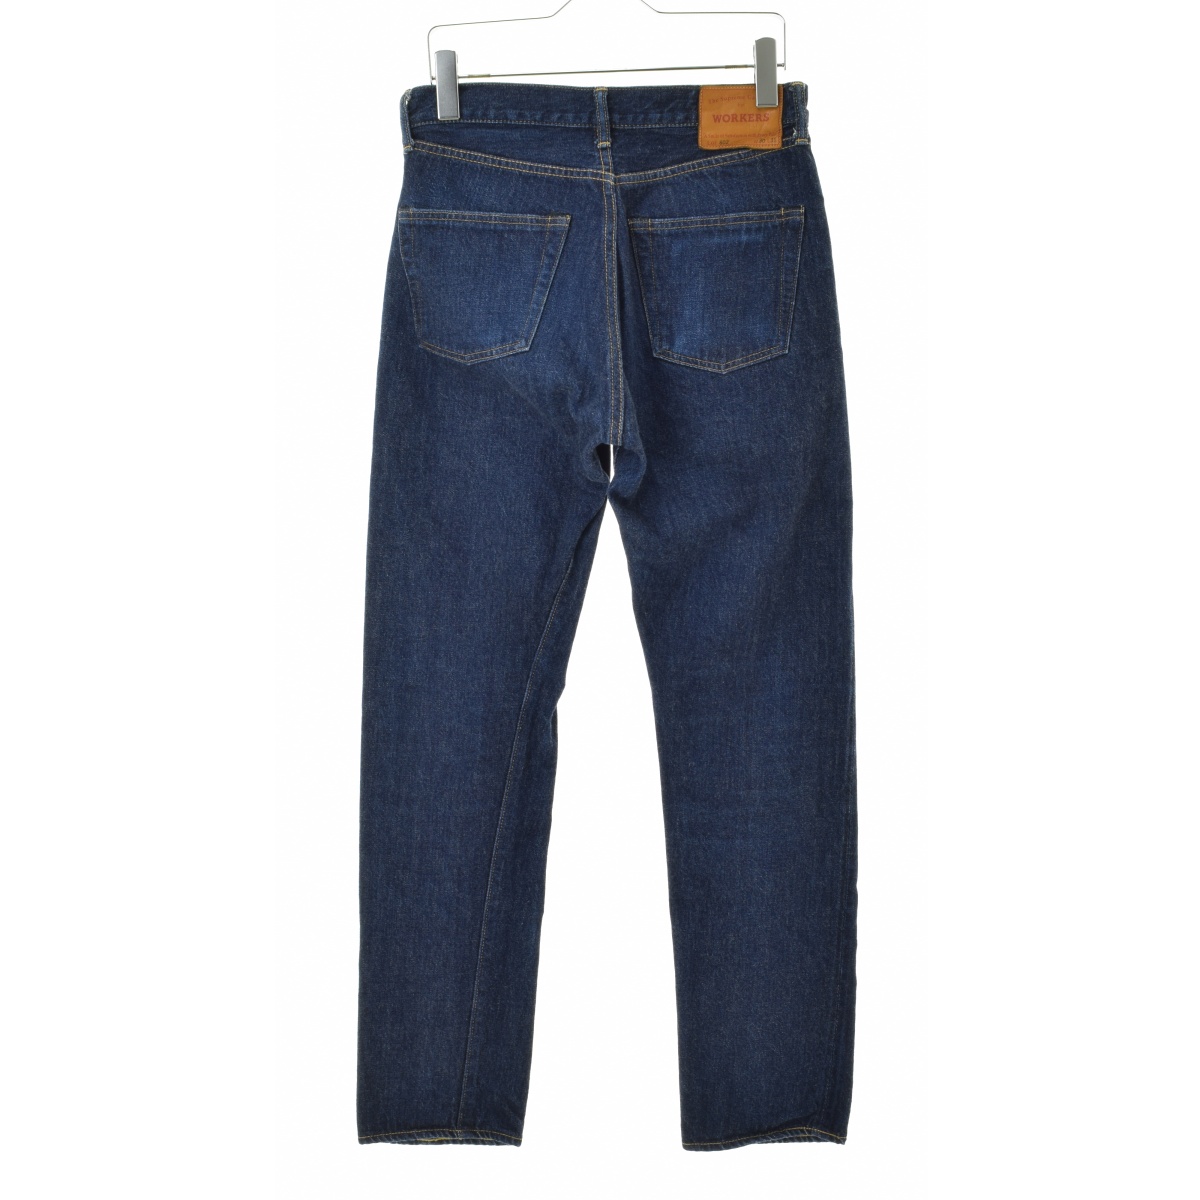 WORKERS K&TH / ワーカーズ Lot 802 Slim Tapered Jeans スリムテーパード デニムパンツ  -ブランド古着の買取販売カンフル